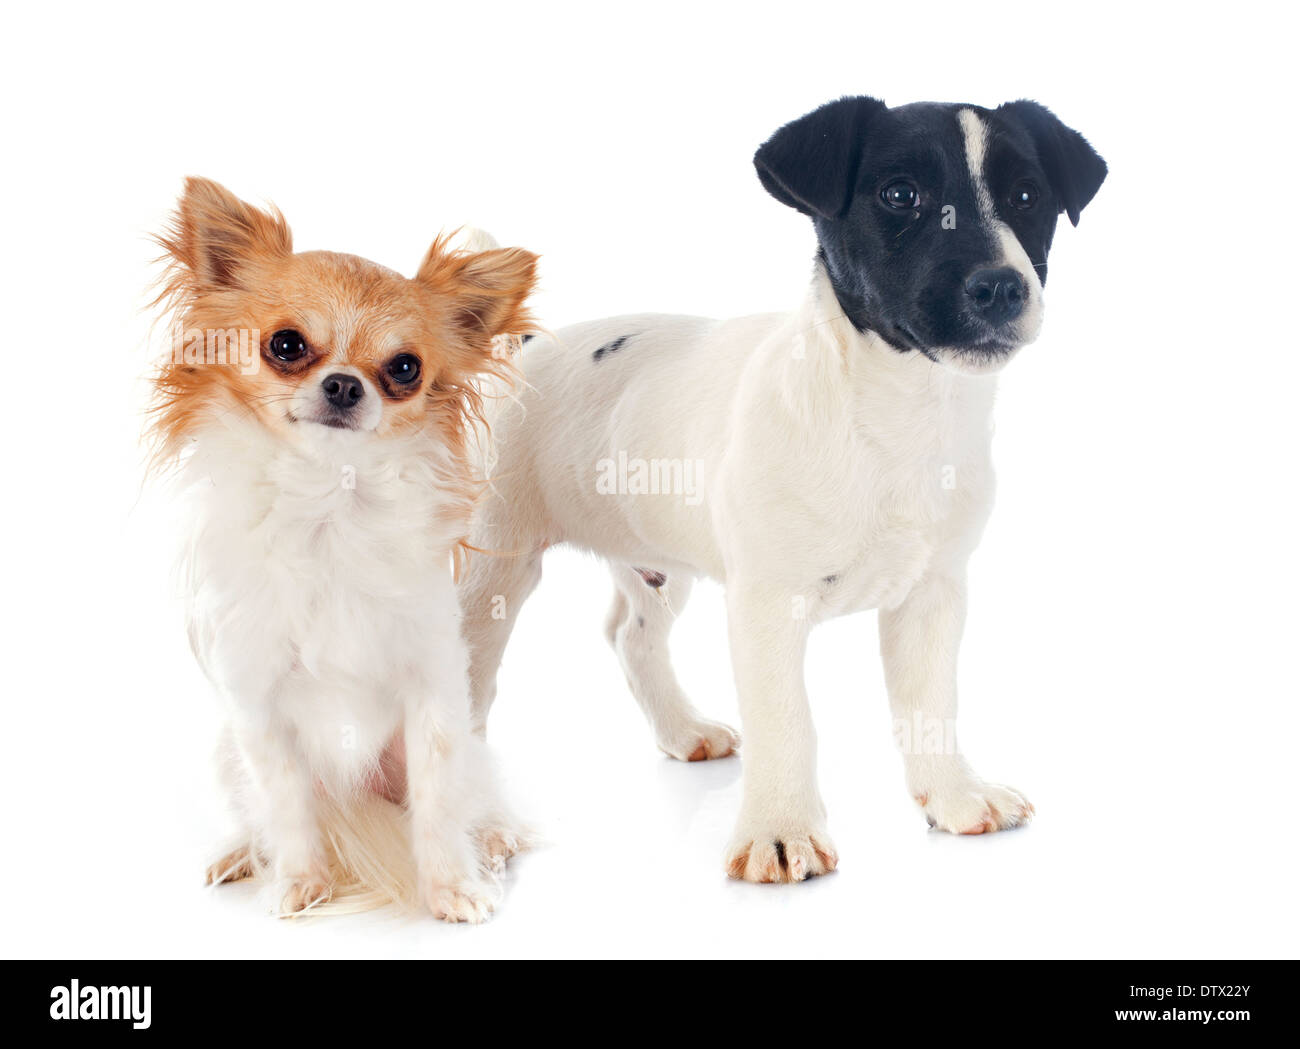 Welpen Chihuahua und Jack Russel Terrier vor weißem Hintergrund  Stockfotografie - Alamy